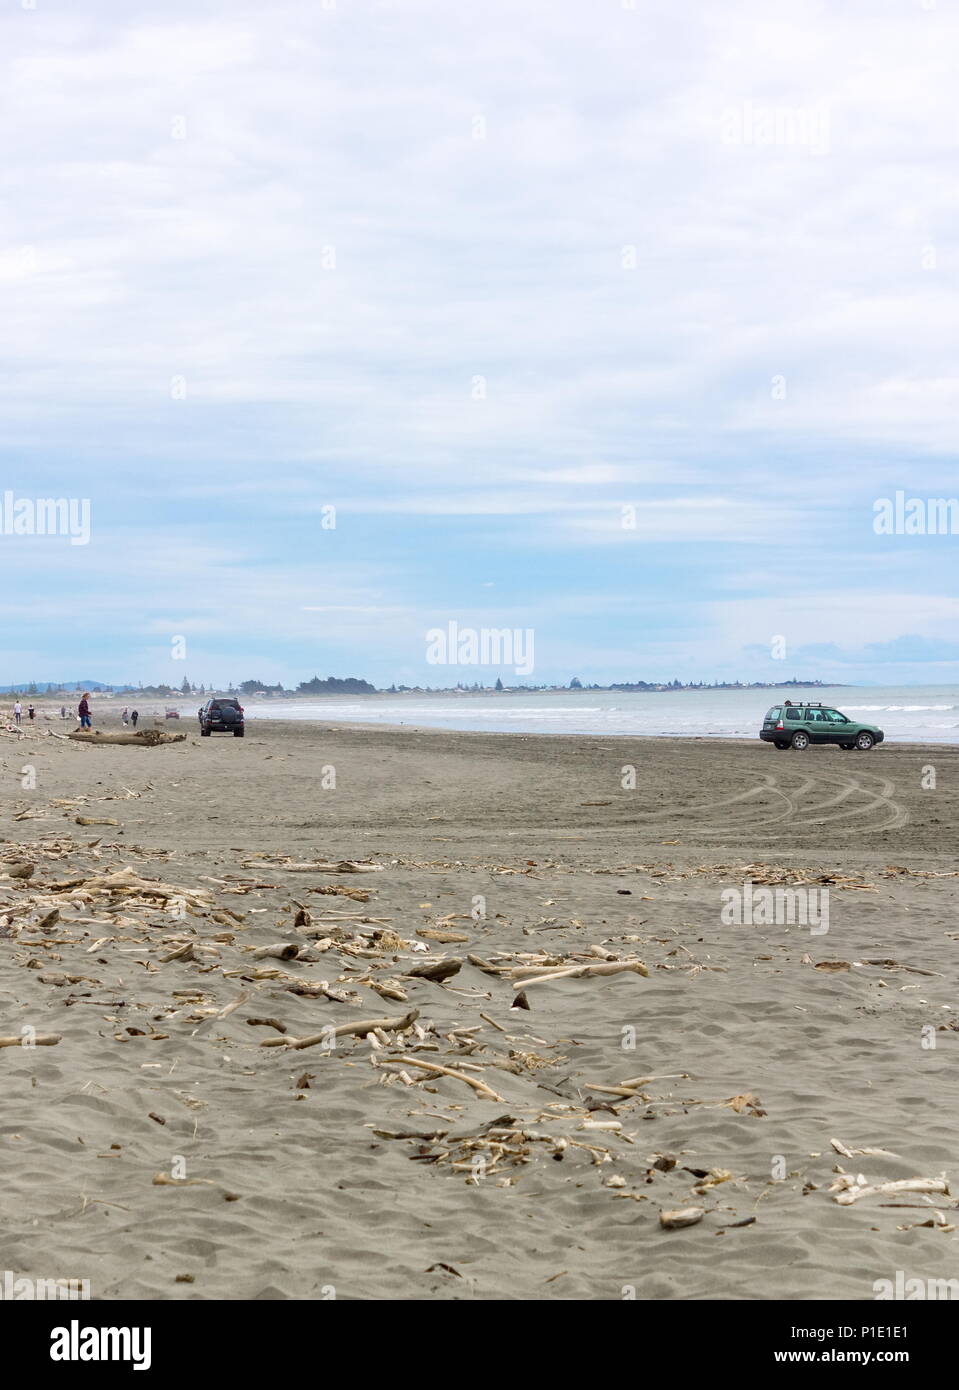 Waikanae, New Zealand - 23 October 2016: People and vehicles on the beach at Waikanae on the Kapiti Coast of New Zealand Stock Photo